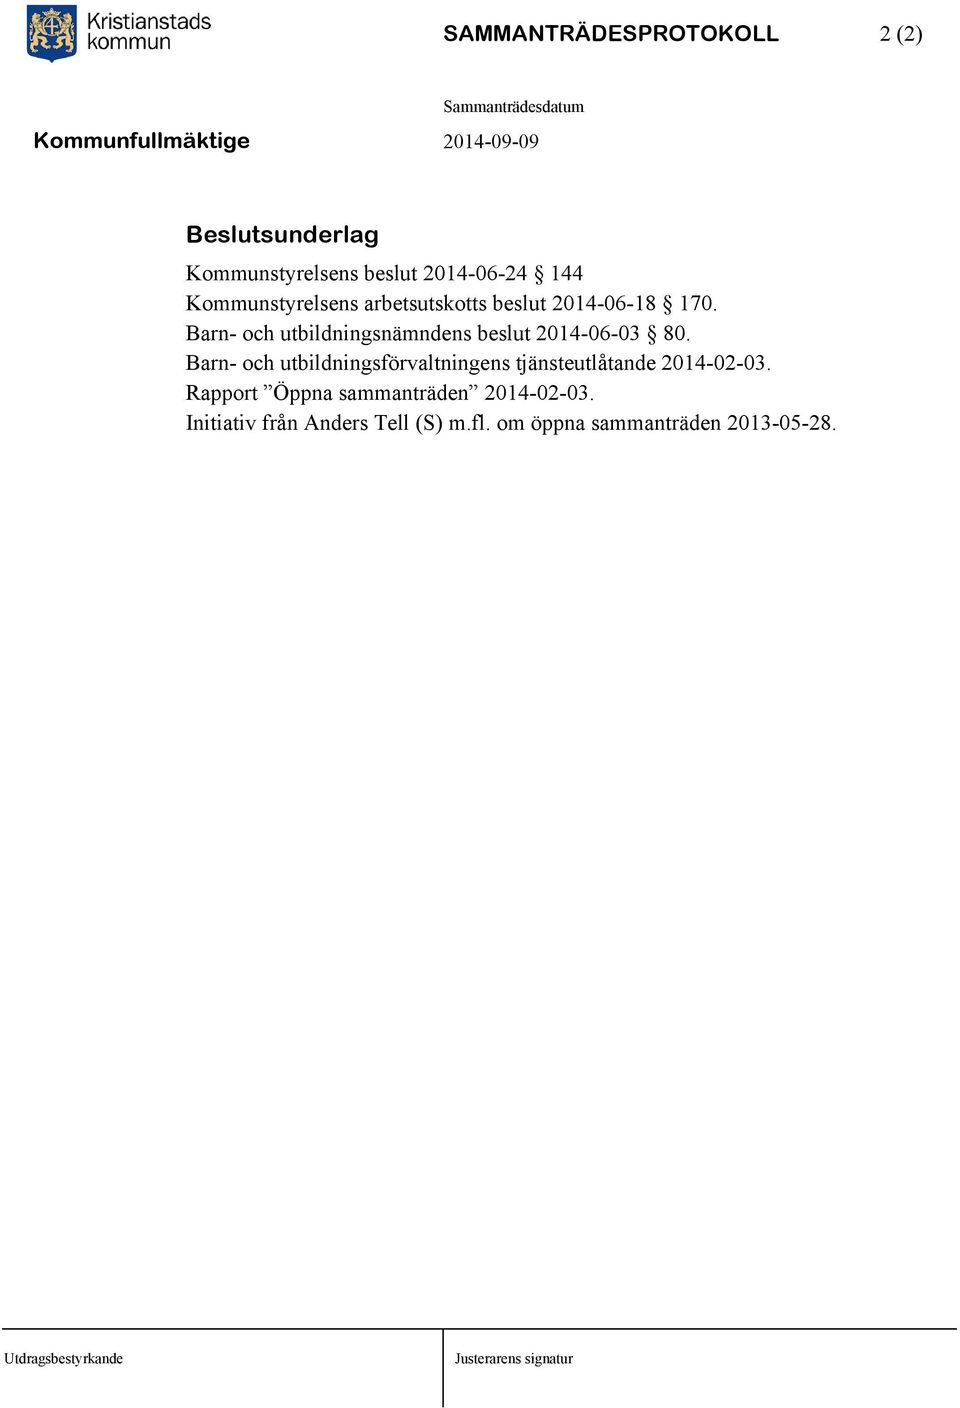 Barn- och utbildningsnämndens beslut 2014-06-03 80.